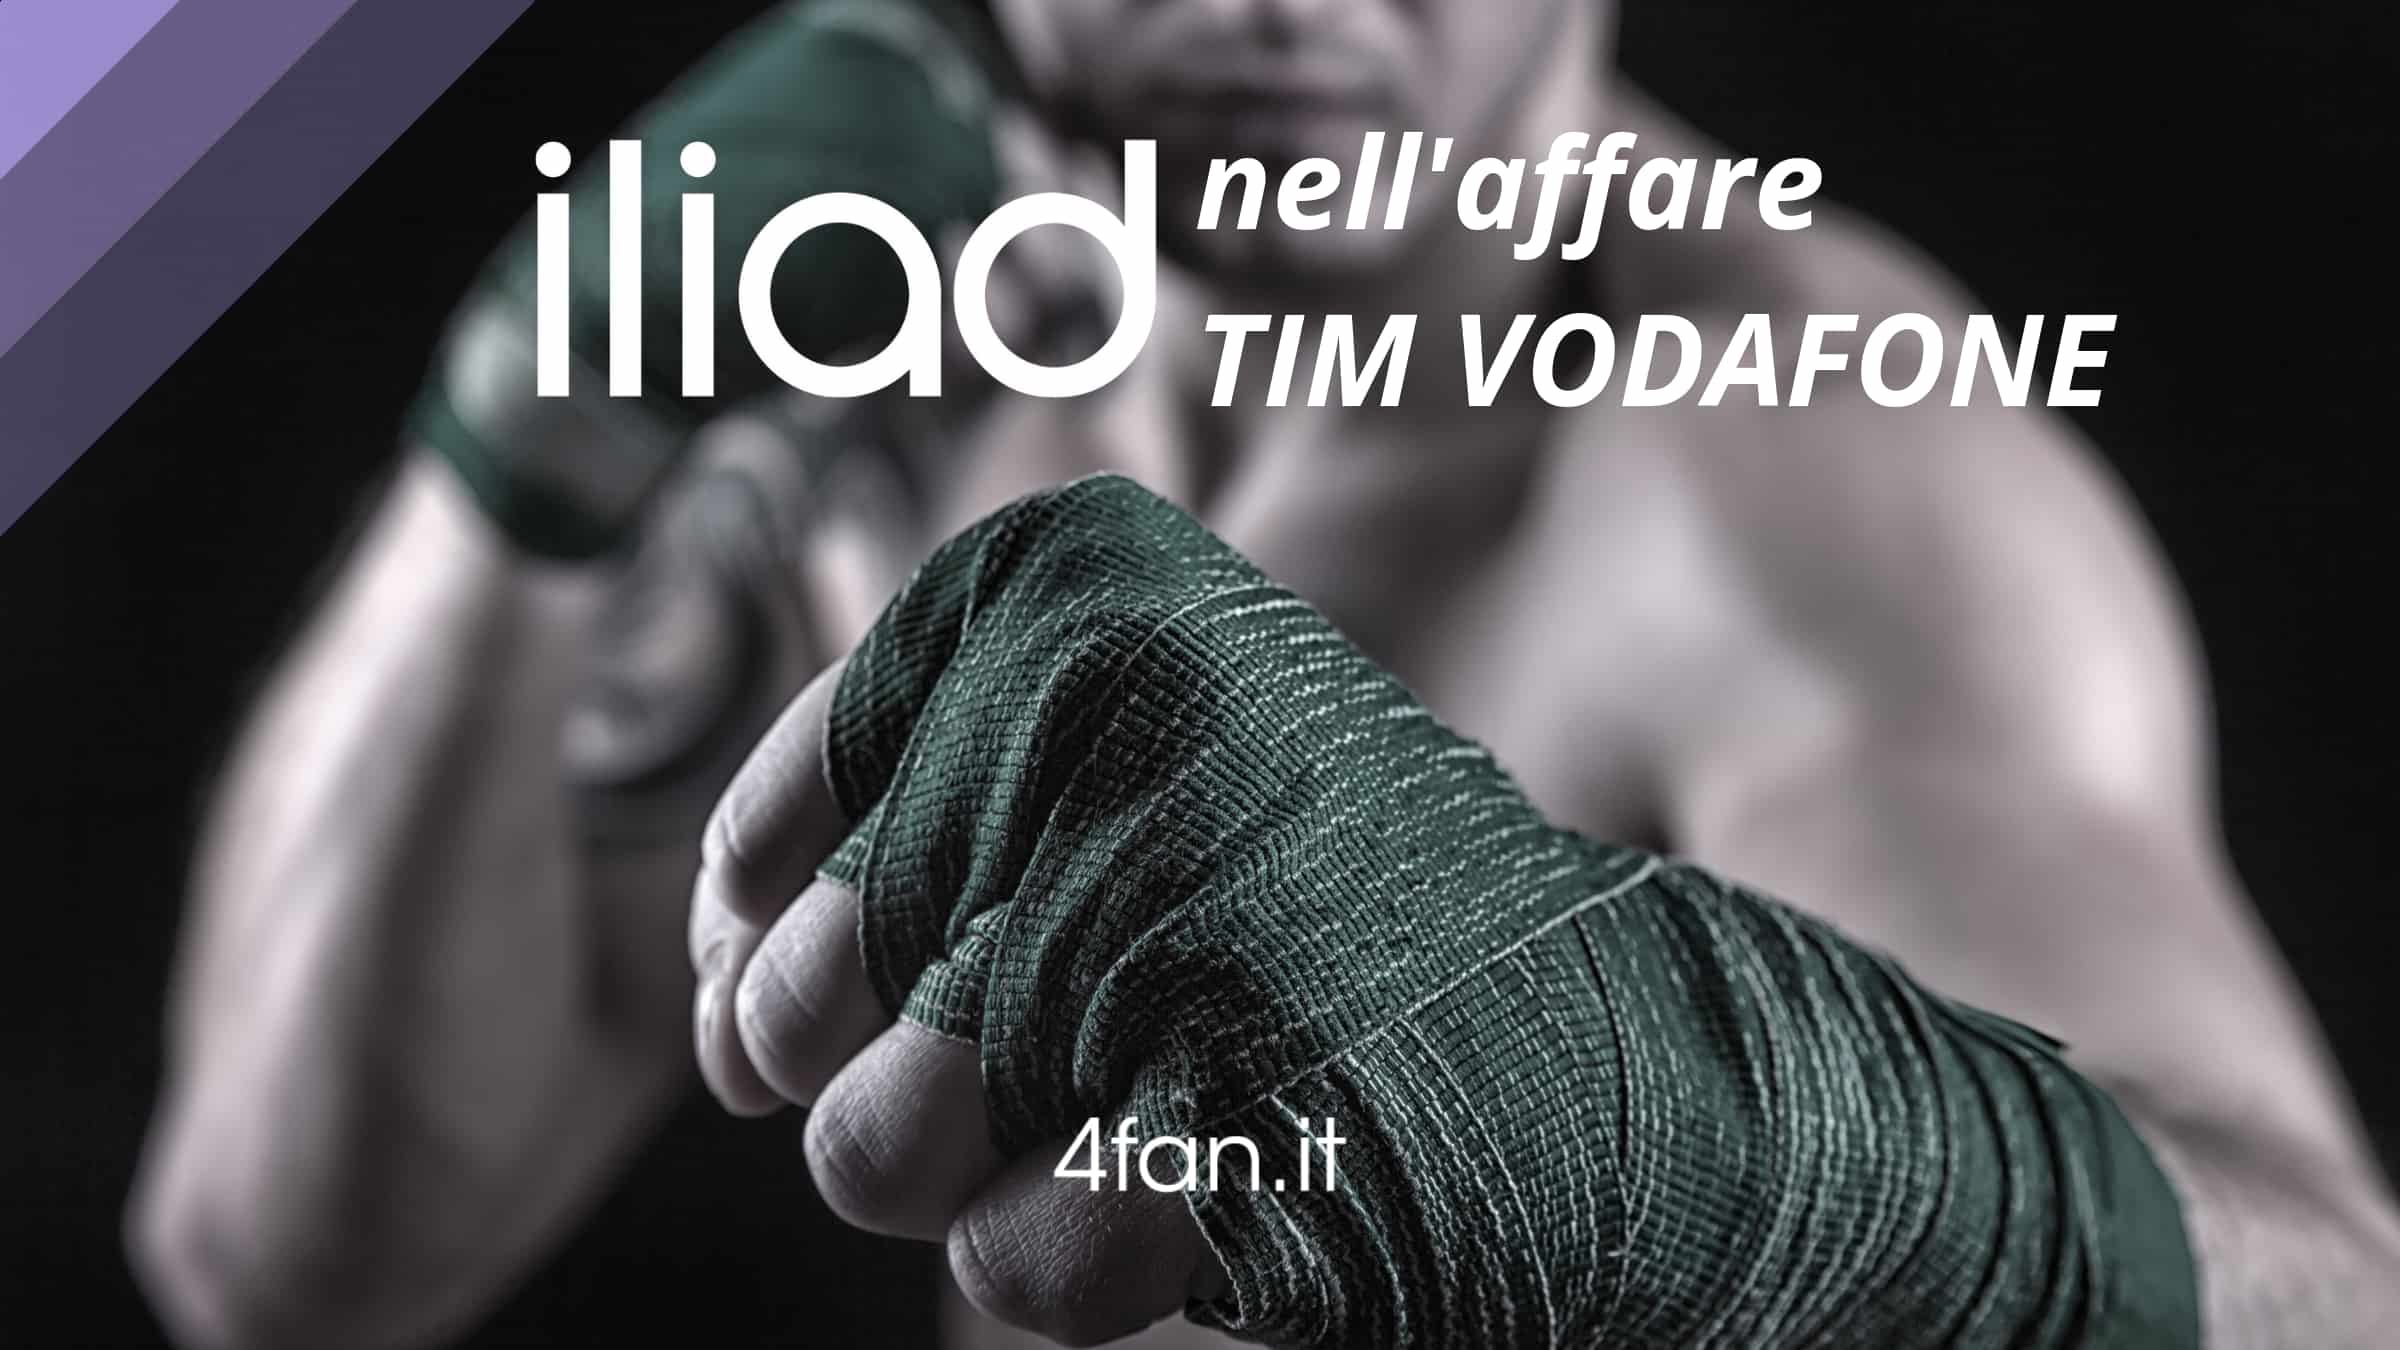 Iliad affare Tim Vodafone